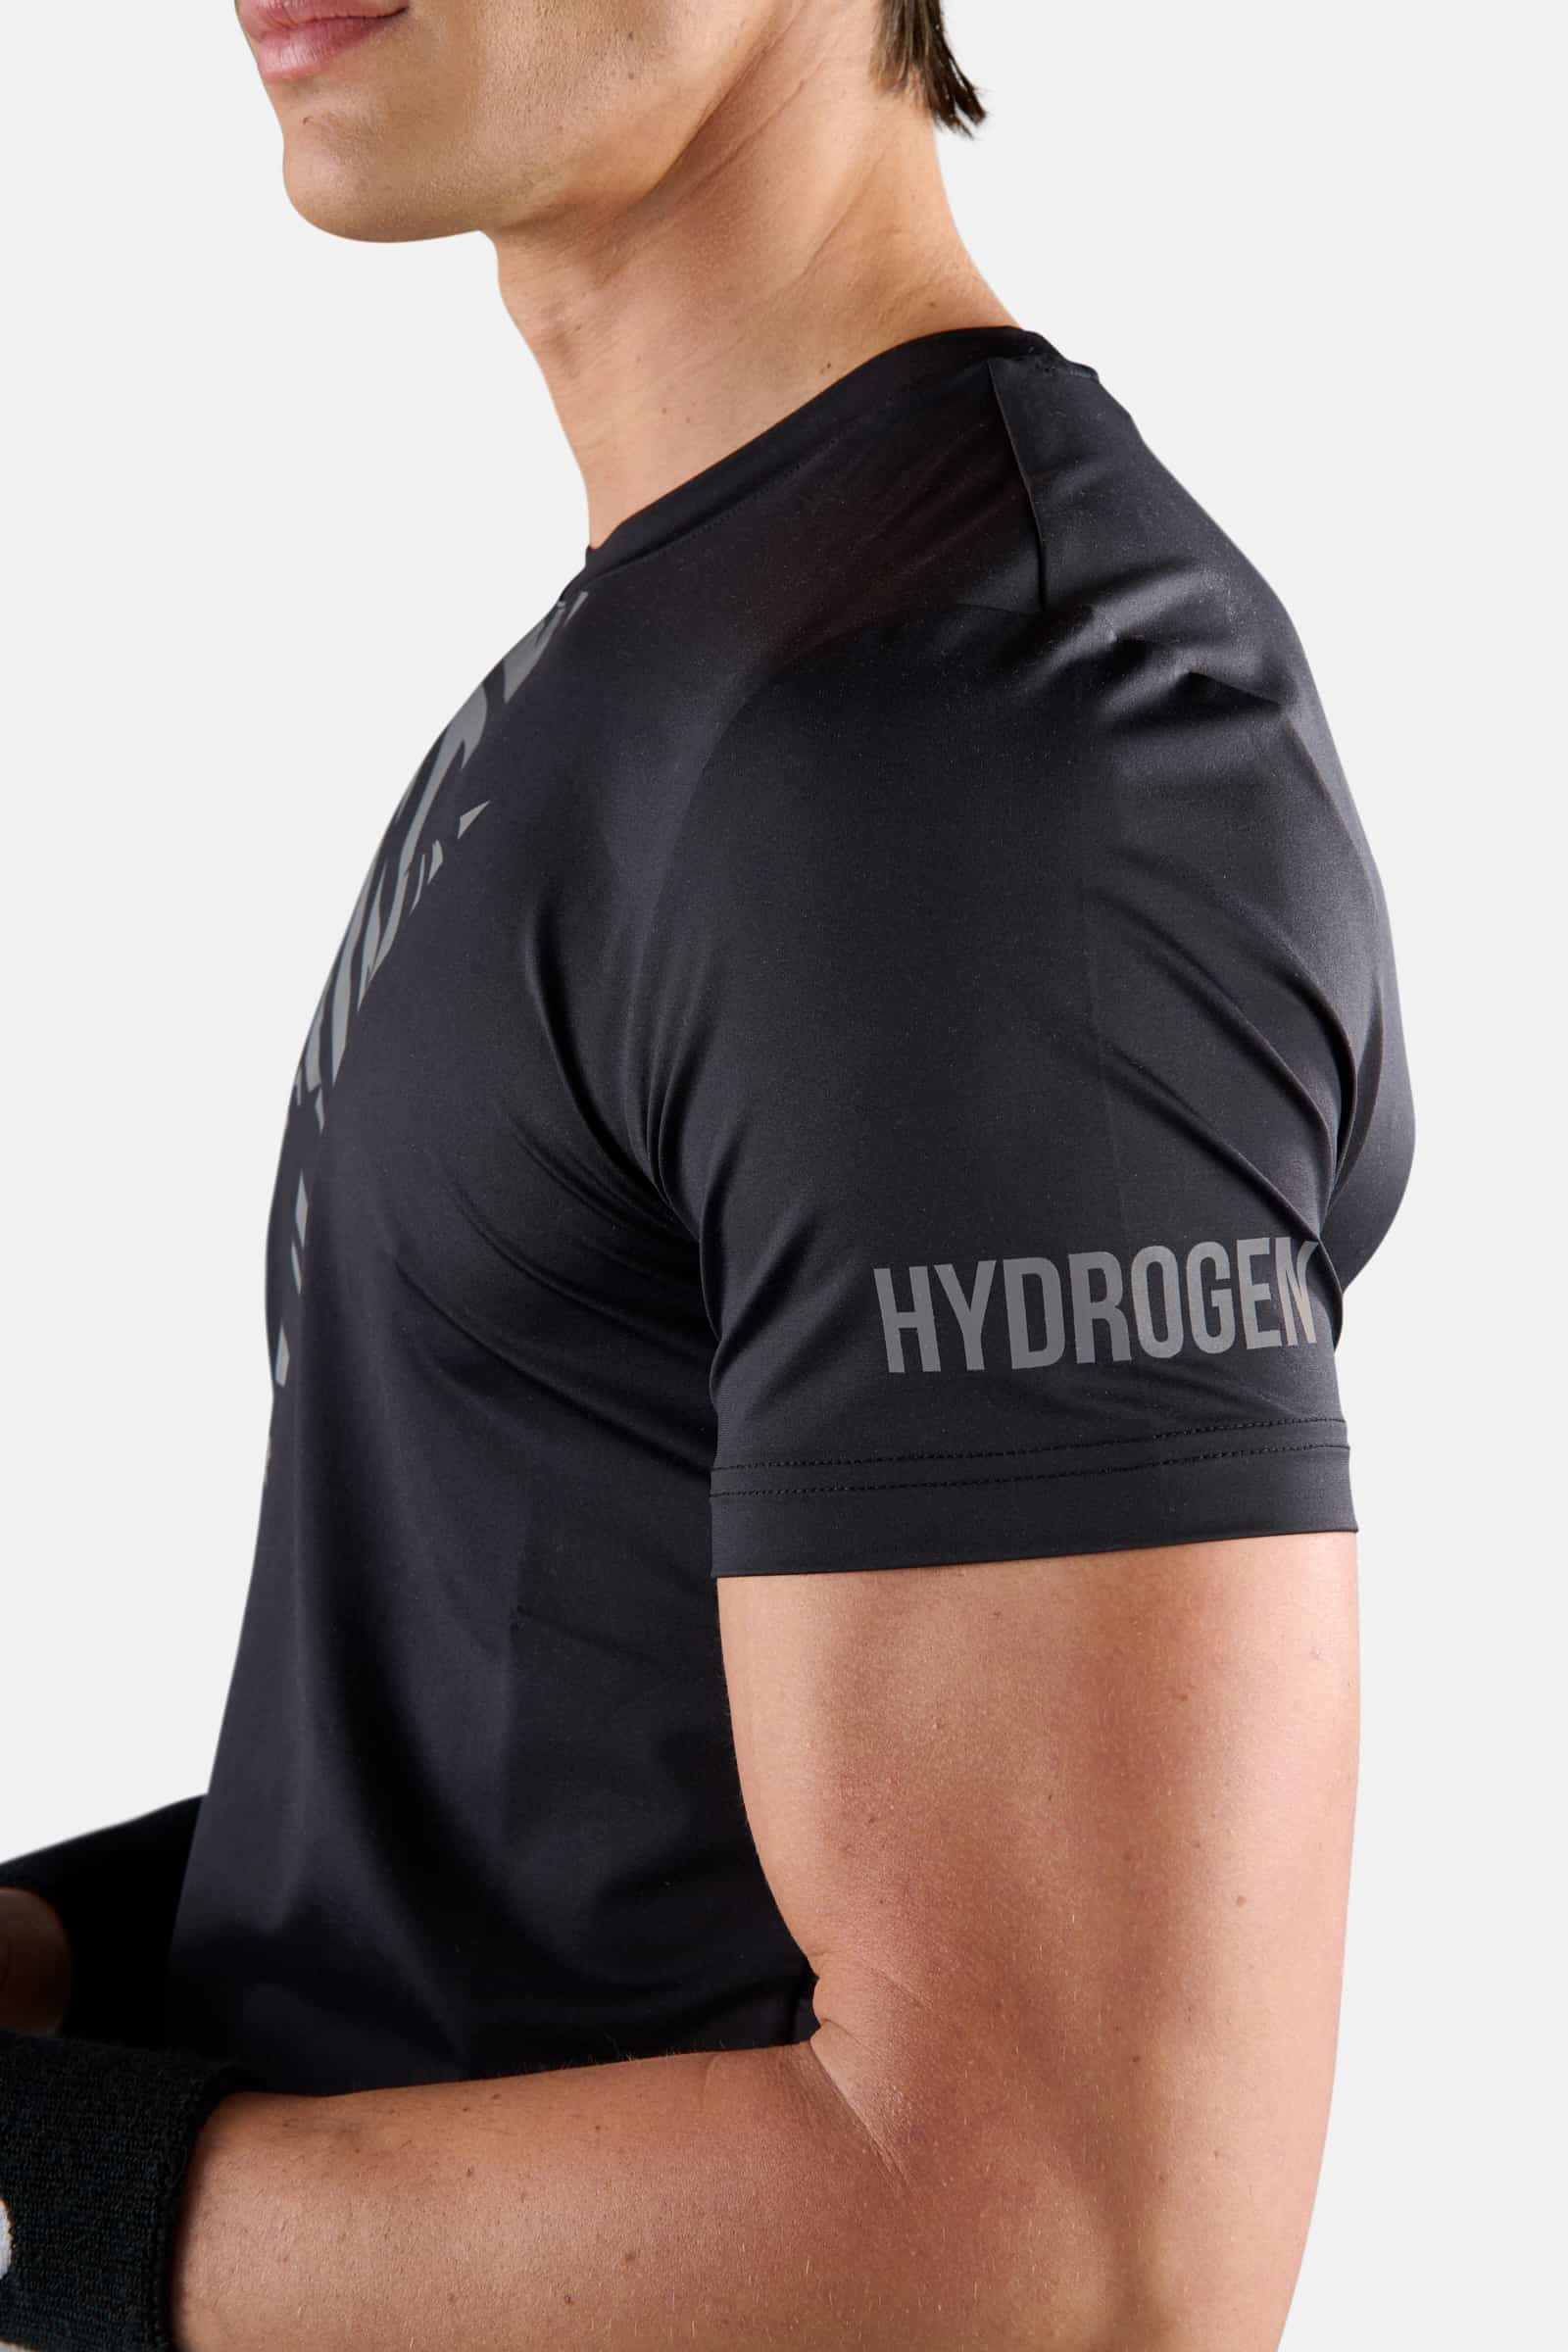 TIGER TECH TEE - BLACK,SILVER - Hydrogen - Luxury Sportwear